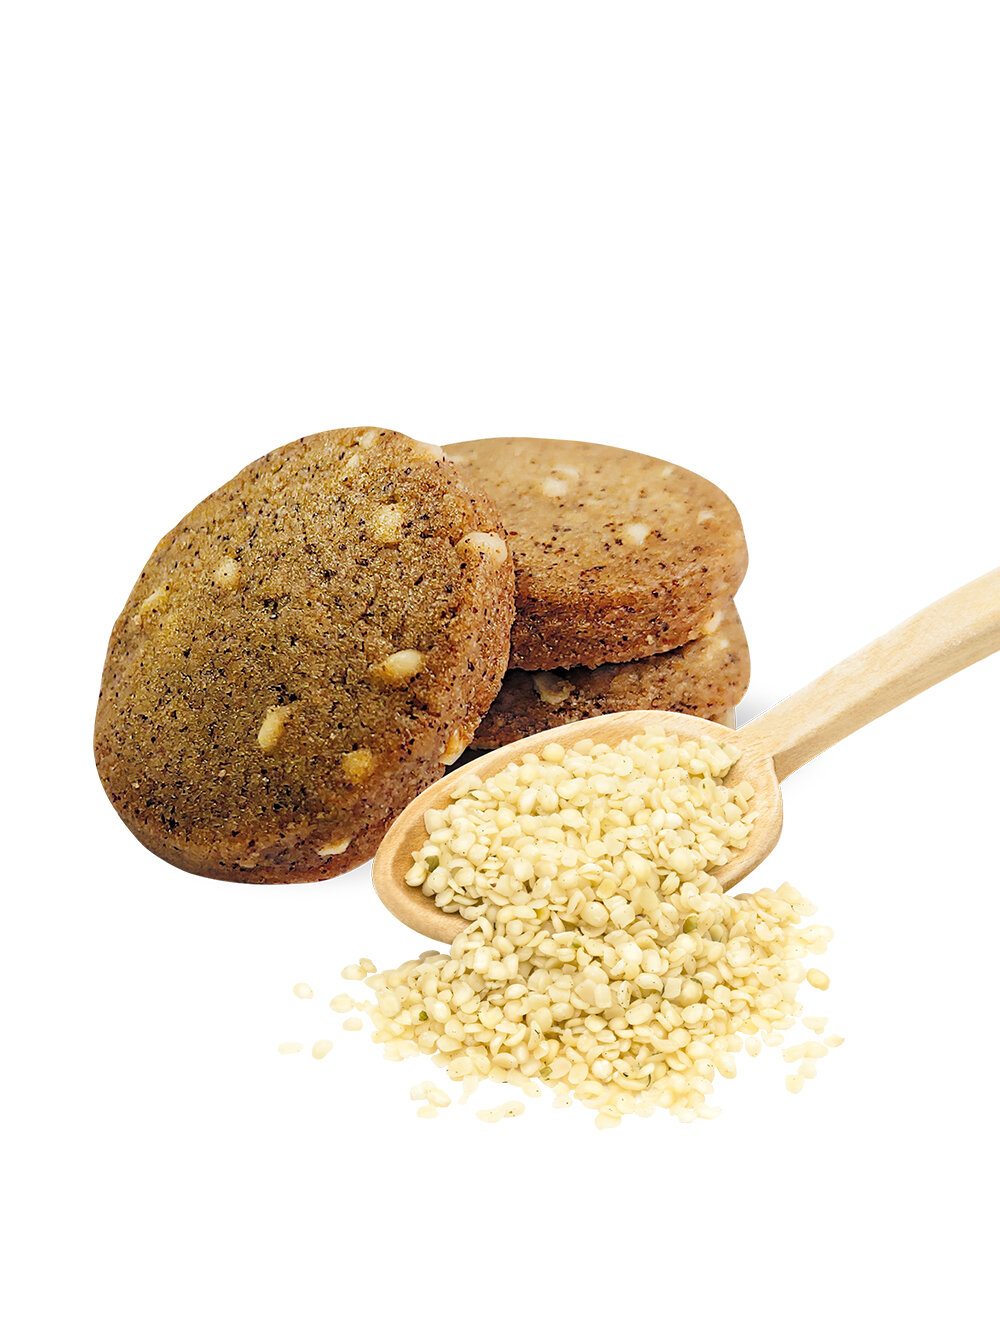 Печенье Vitok полезное натуральное без сахара ассорти протеиновое в коробке, 2 шт по 300 г - фотография № 9